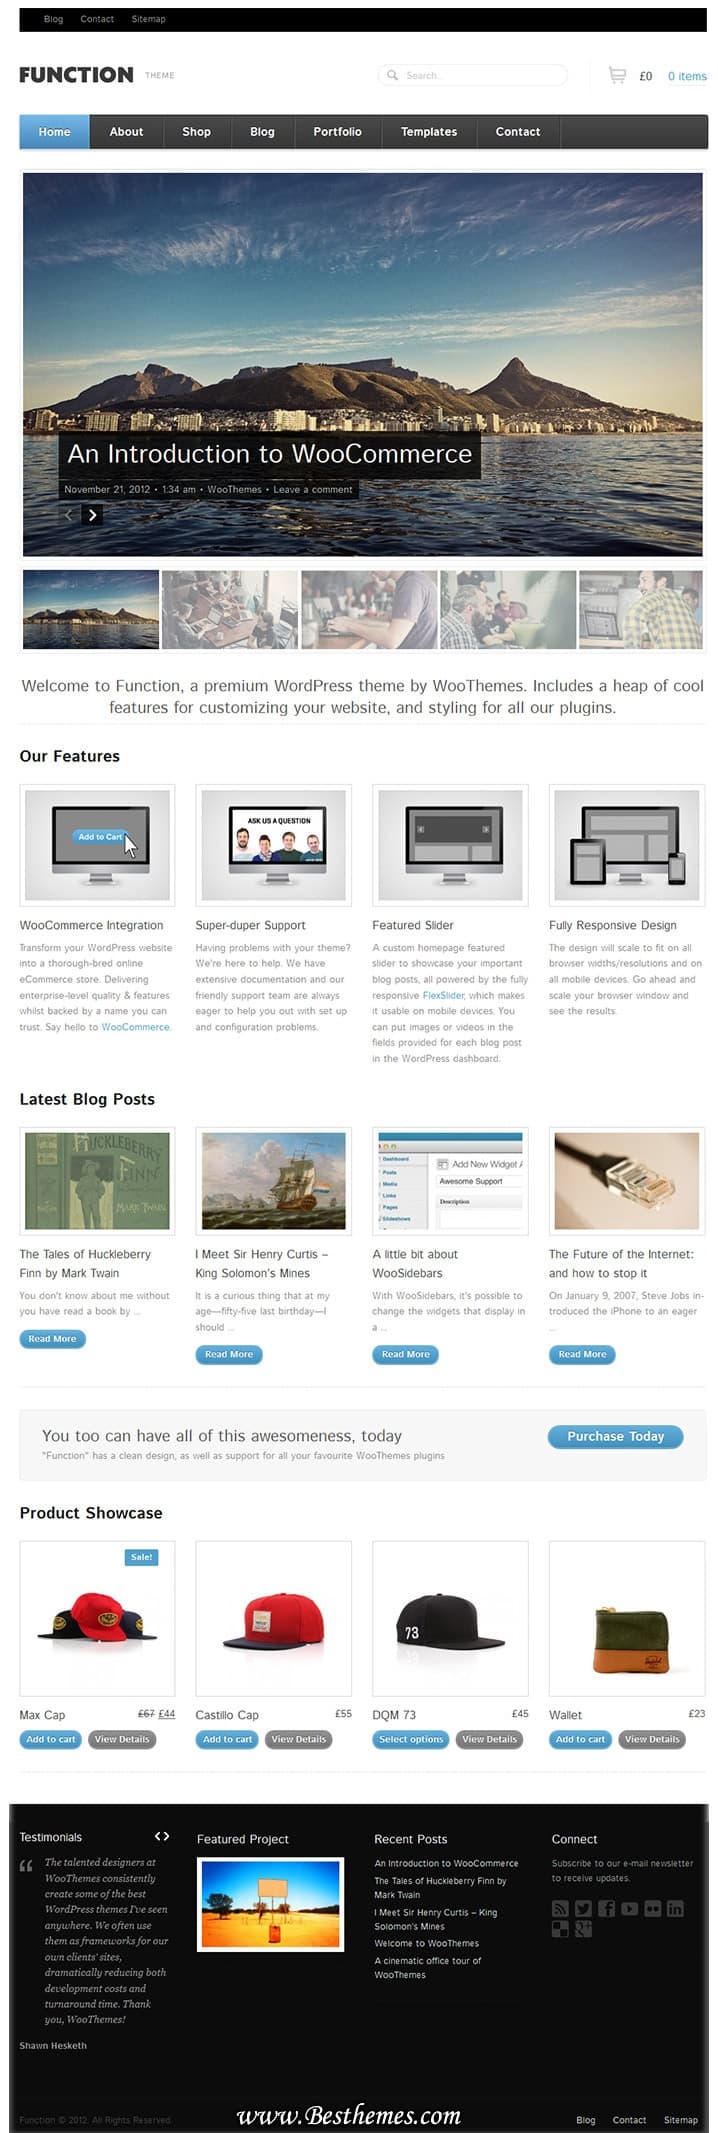 Download Function WordPress Theme, Portfolio WordPress Theme, Optional eCommerce WordPress Theme